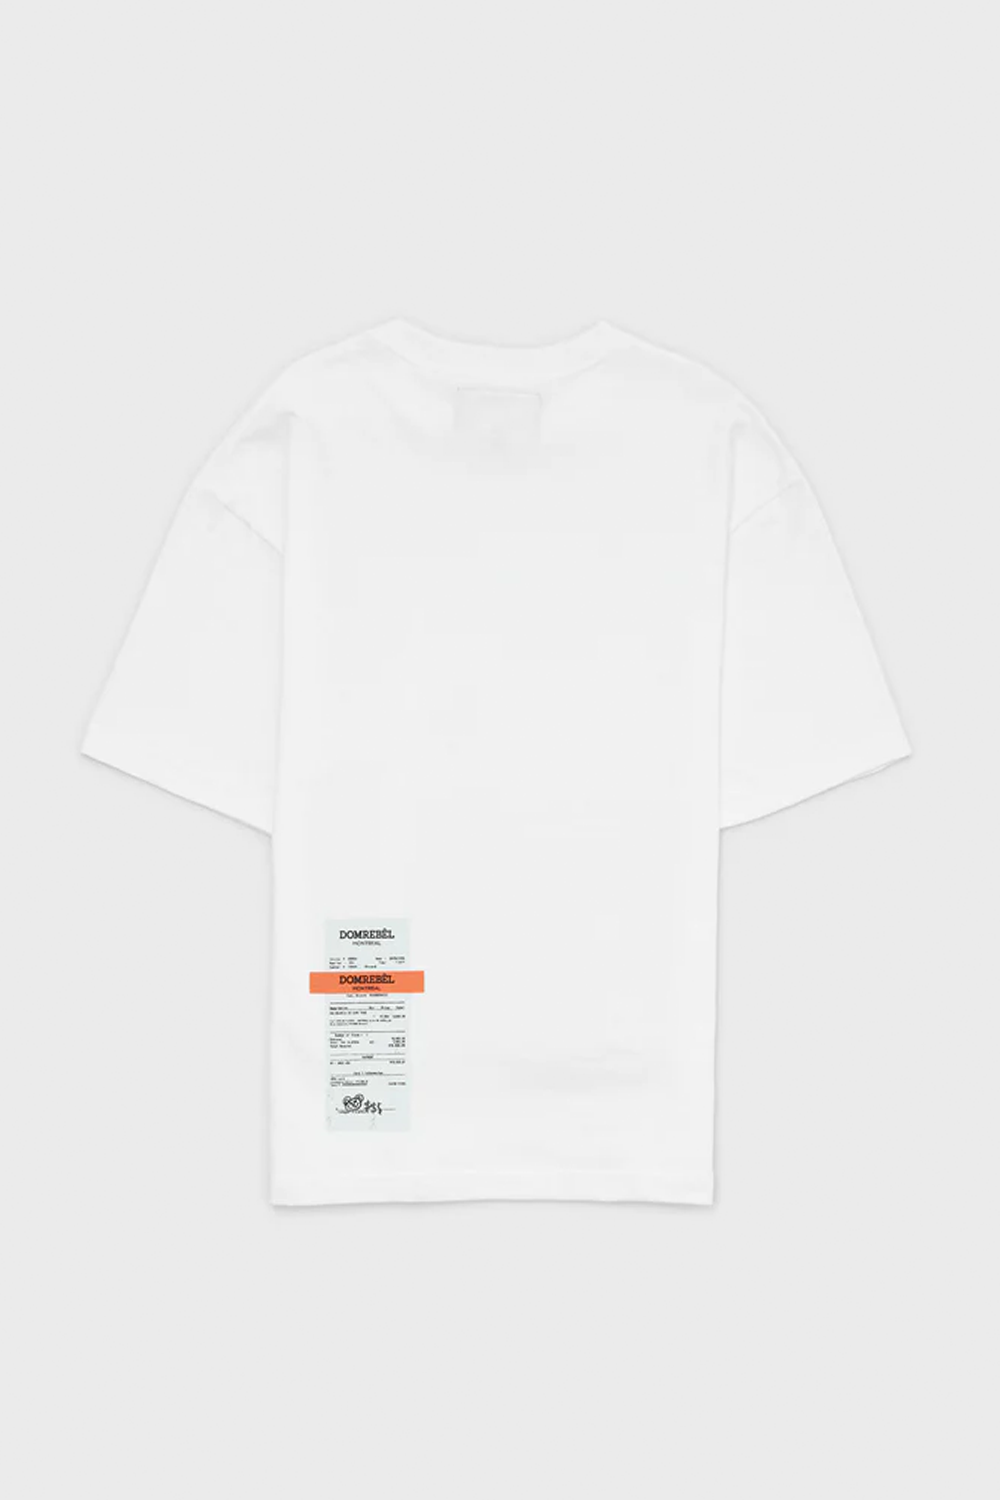 חולצה לגברים בצבע לבן DOMREBEL DOMREBEL Vendome online | ונדום .